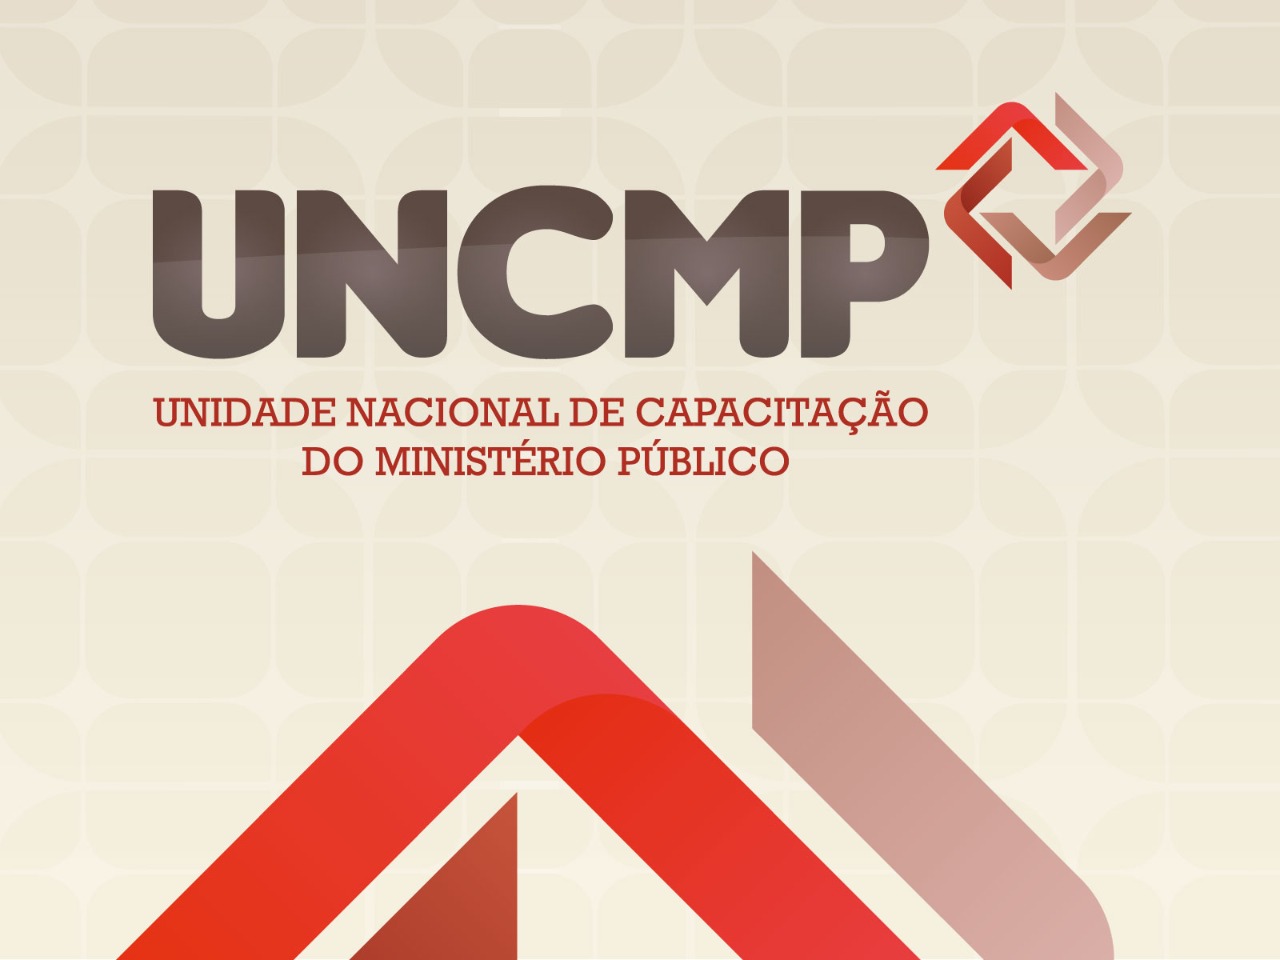 UNCMP obtém descontos em cursos de especialização para os membros do Ministério Público brasileiro   